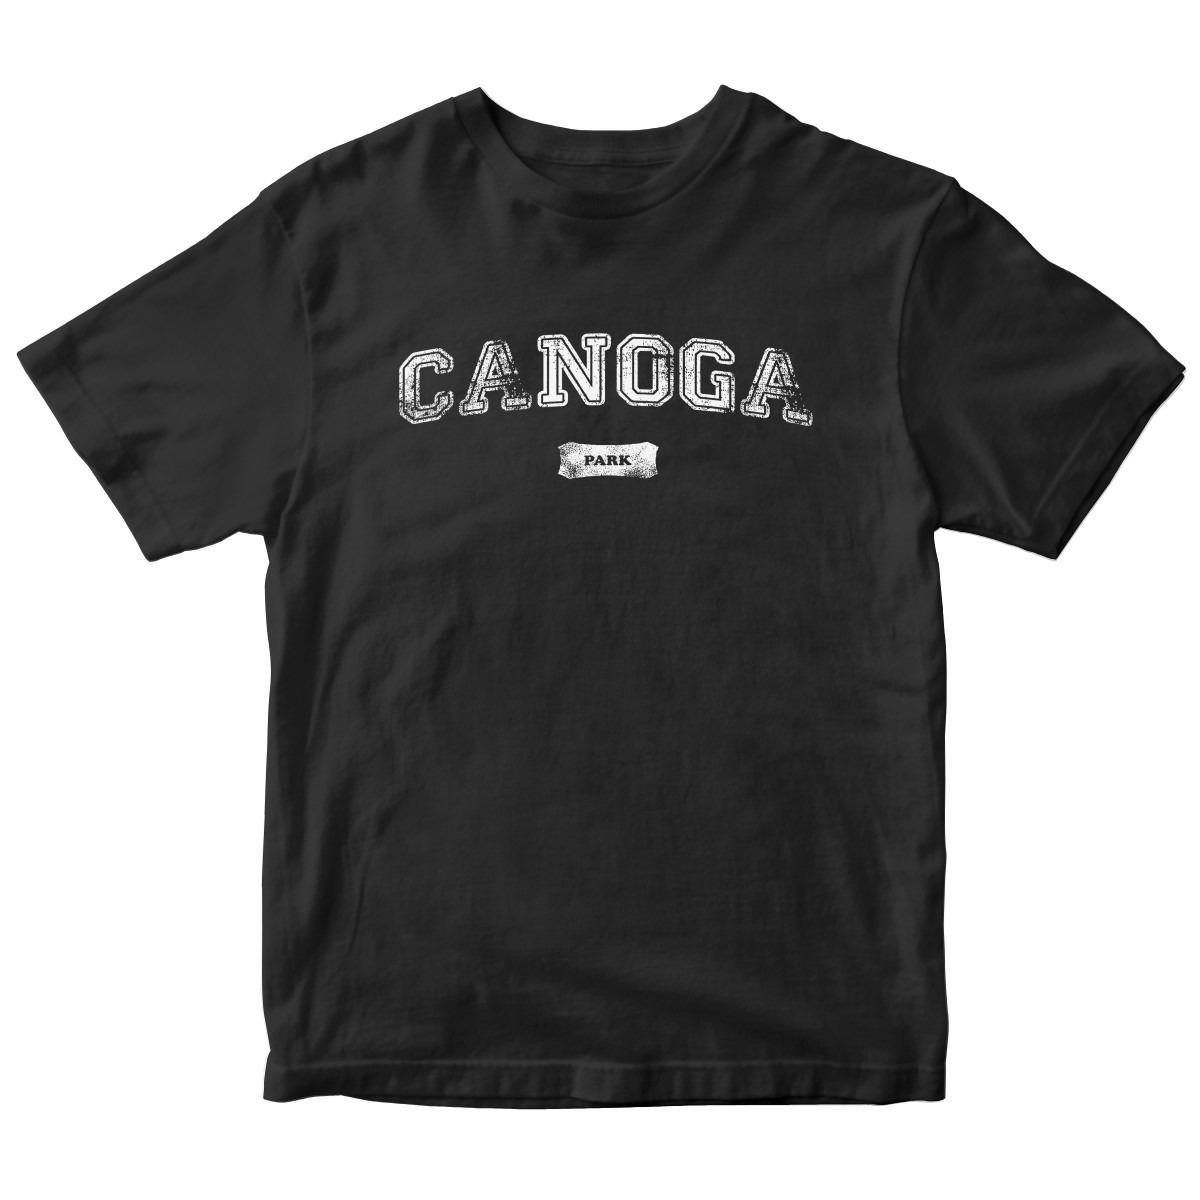 Canoga Park Represent Kids T-shirt | Black